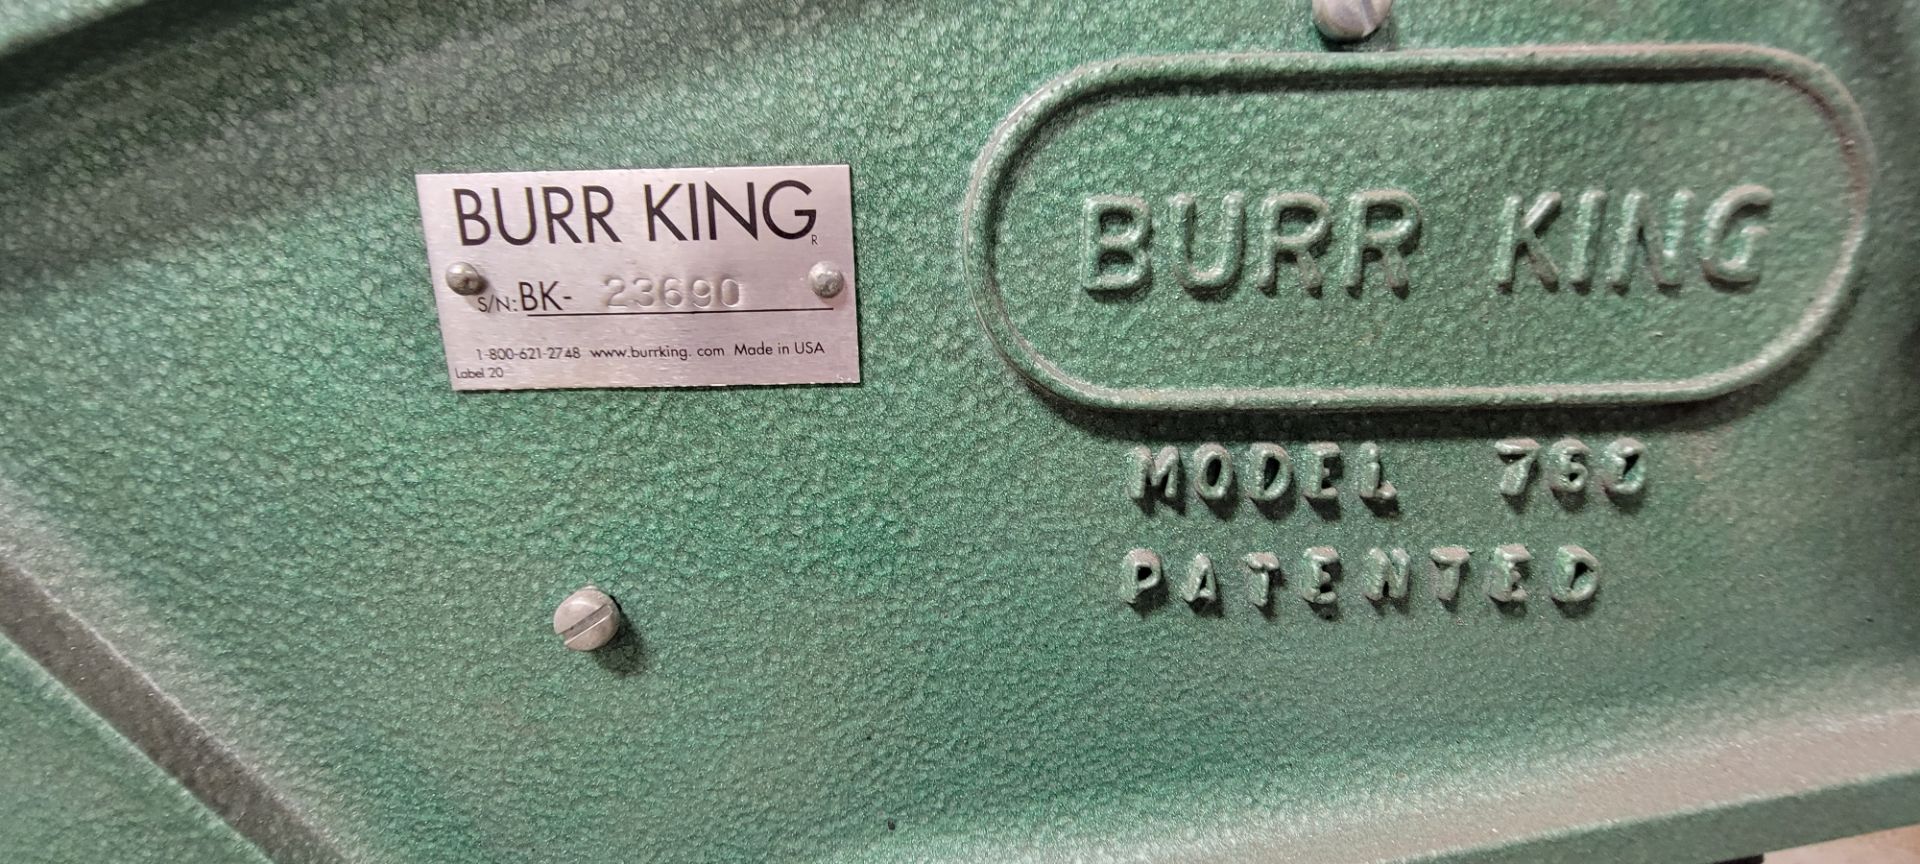 Burr King 760, 2" Belt Sander - Image 3 of 4